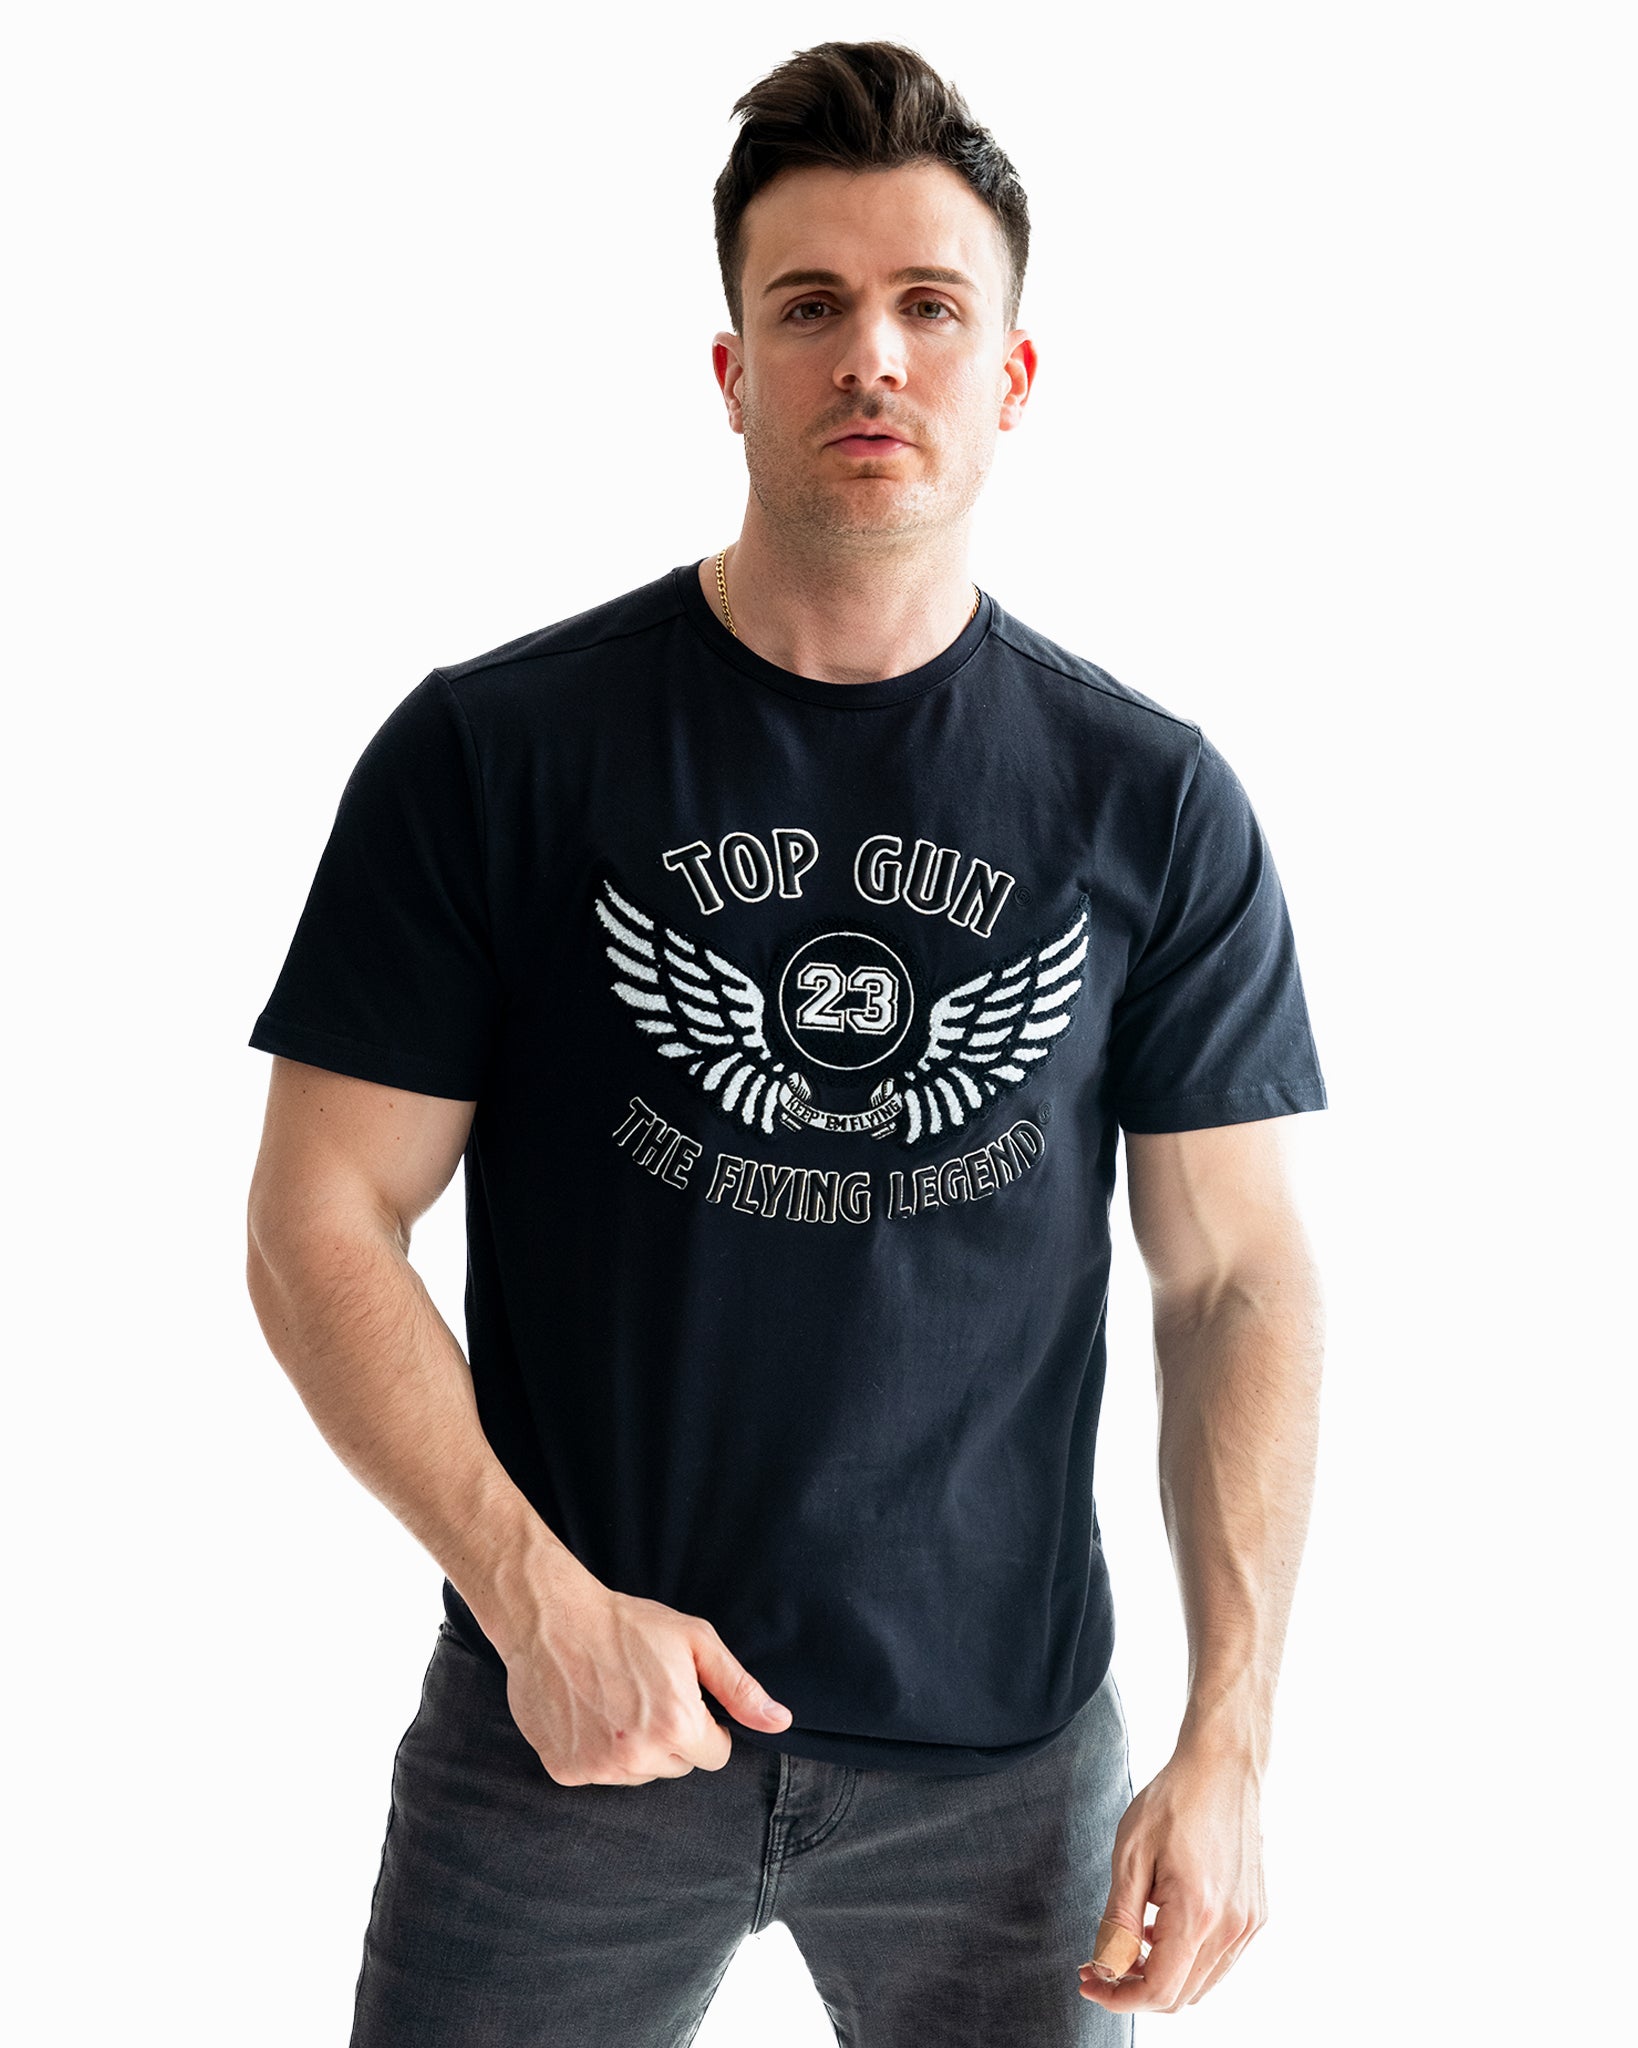 Official Top Gun Men's T-shirt 